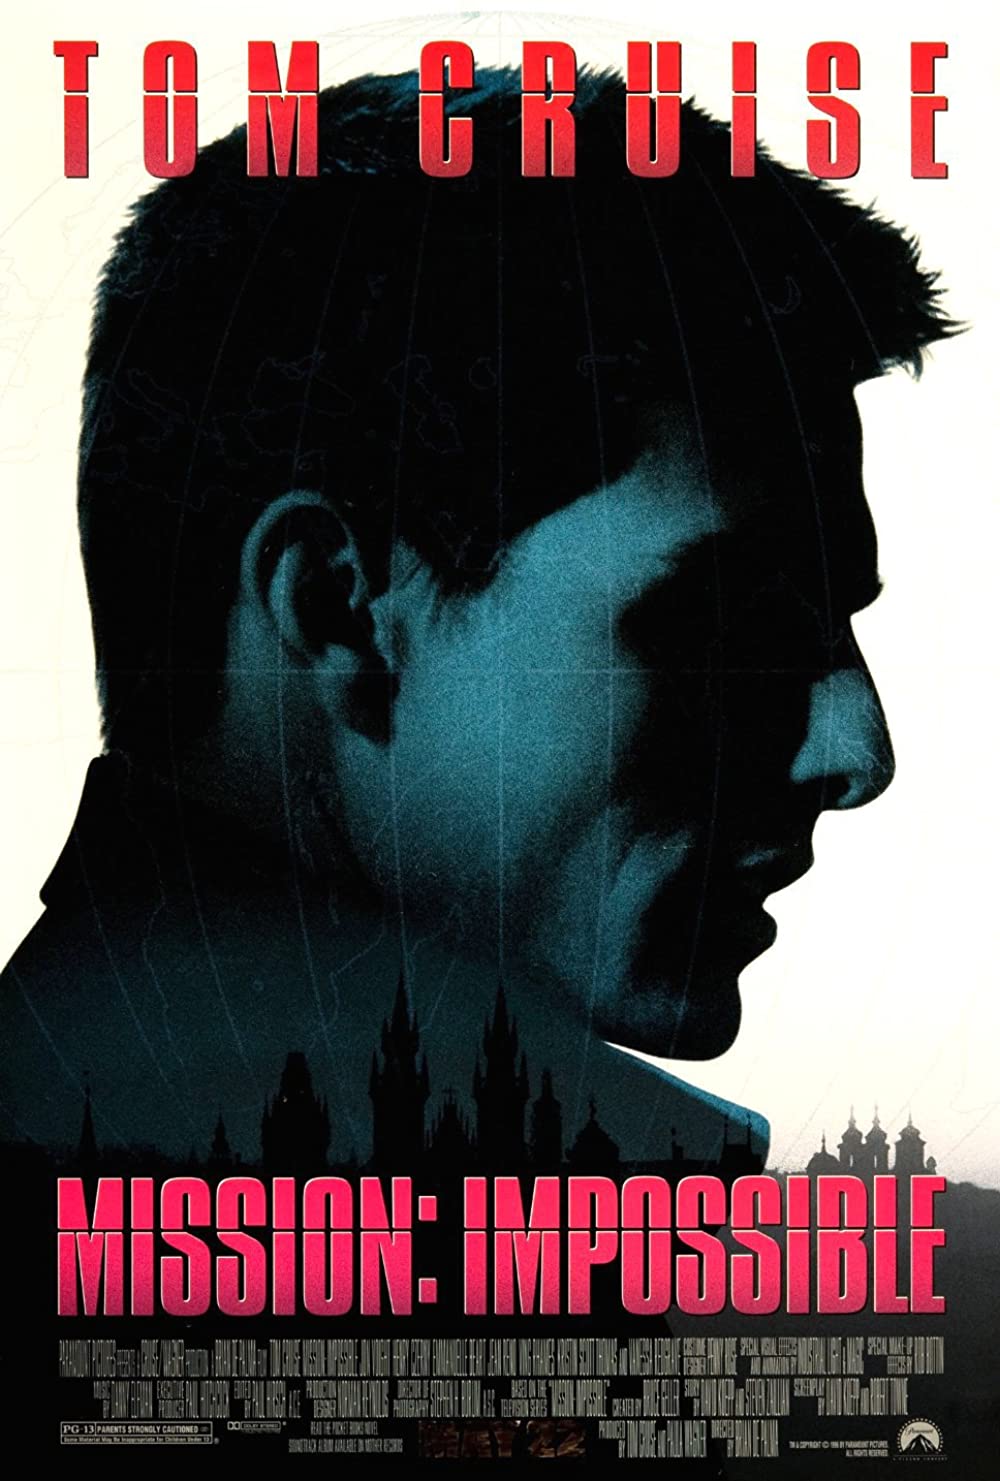 Filmbeschreibung zu Mission: Impossible